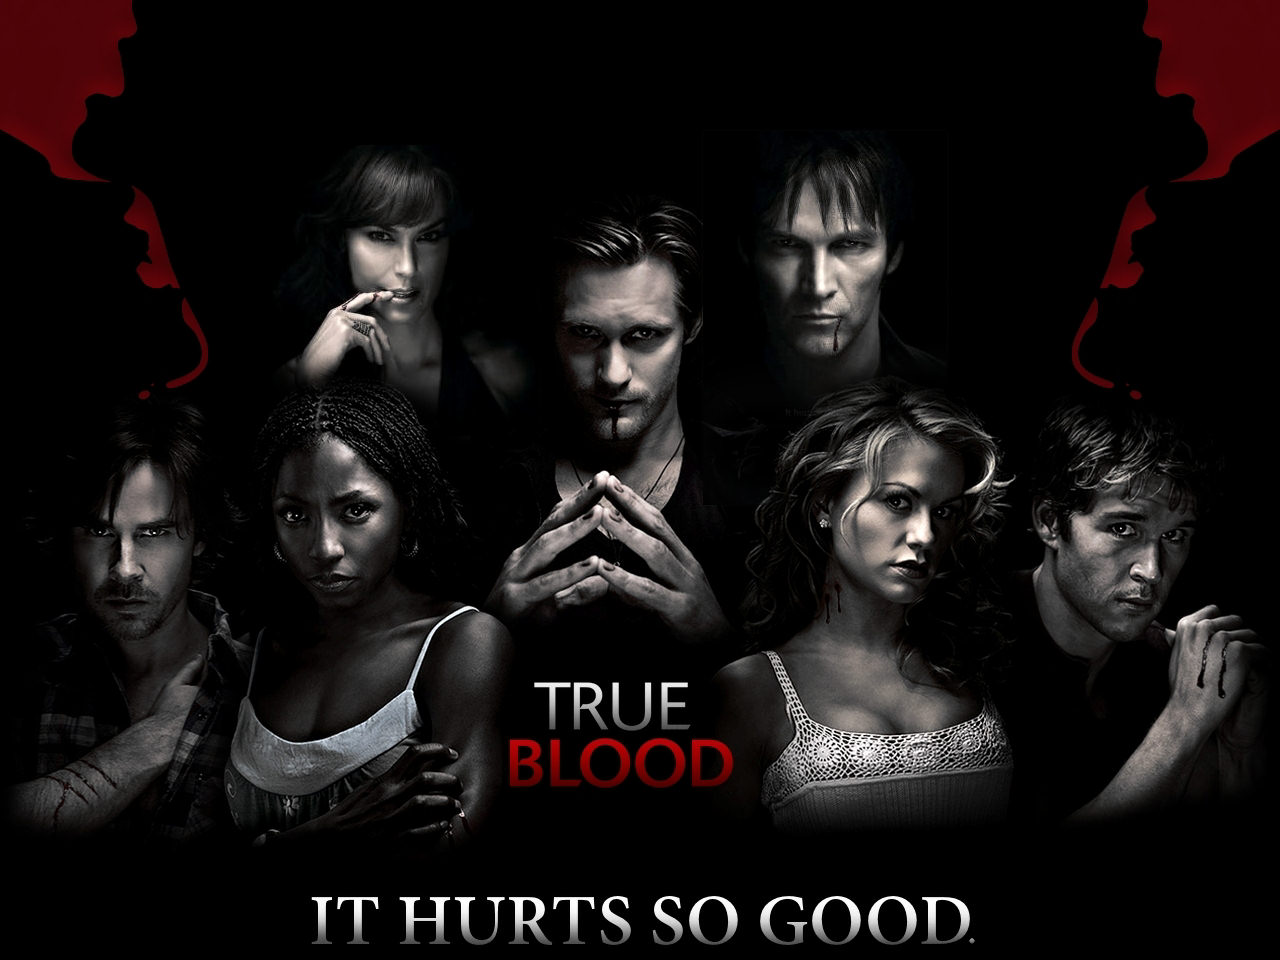 True Blood HD Wallpaper Desktop Image